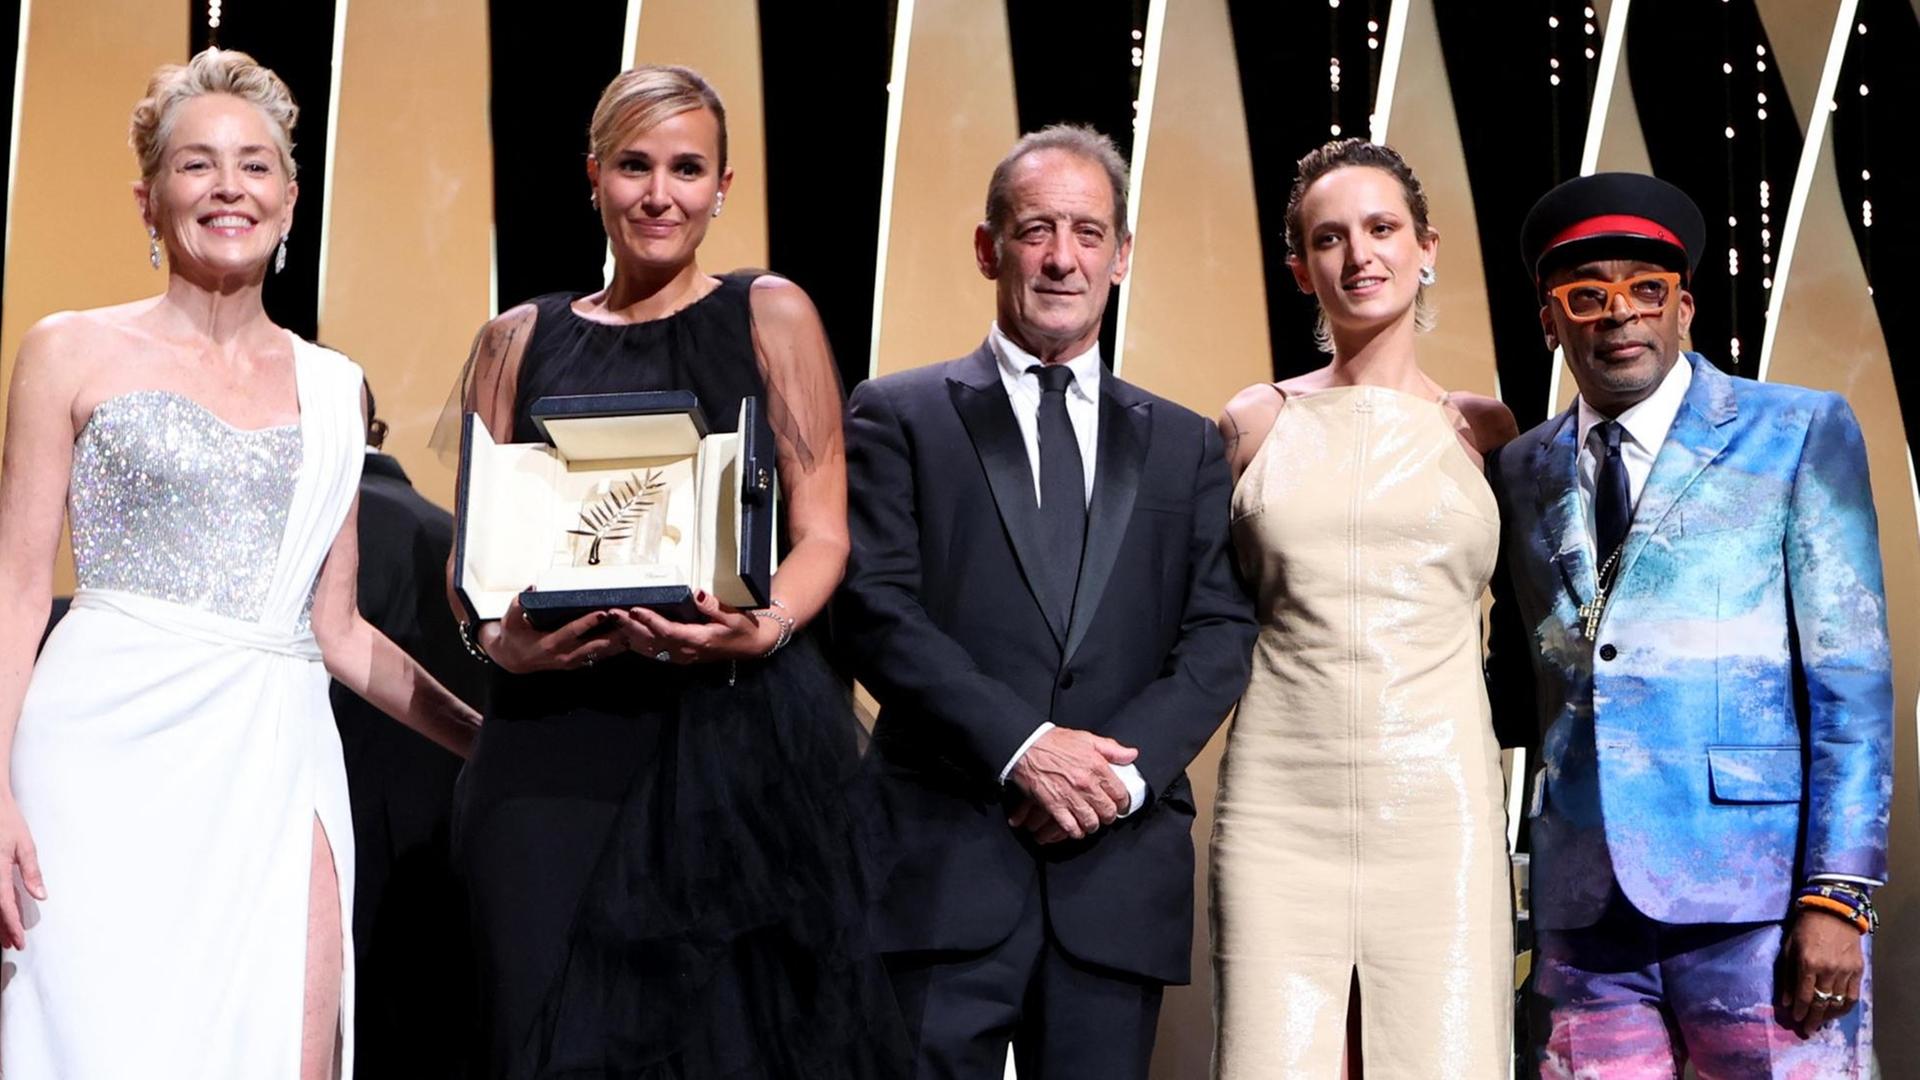 V.l.: Schauspielerin Sharon Stone, Regisseurin Julia Ducournau, Schauspieler Vincent Lindon, Schauspielerin Agathe Rousselle und Jurypräsident Spike Lee bei der Presiverleihung der Goldenen Palme in Cannes.